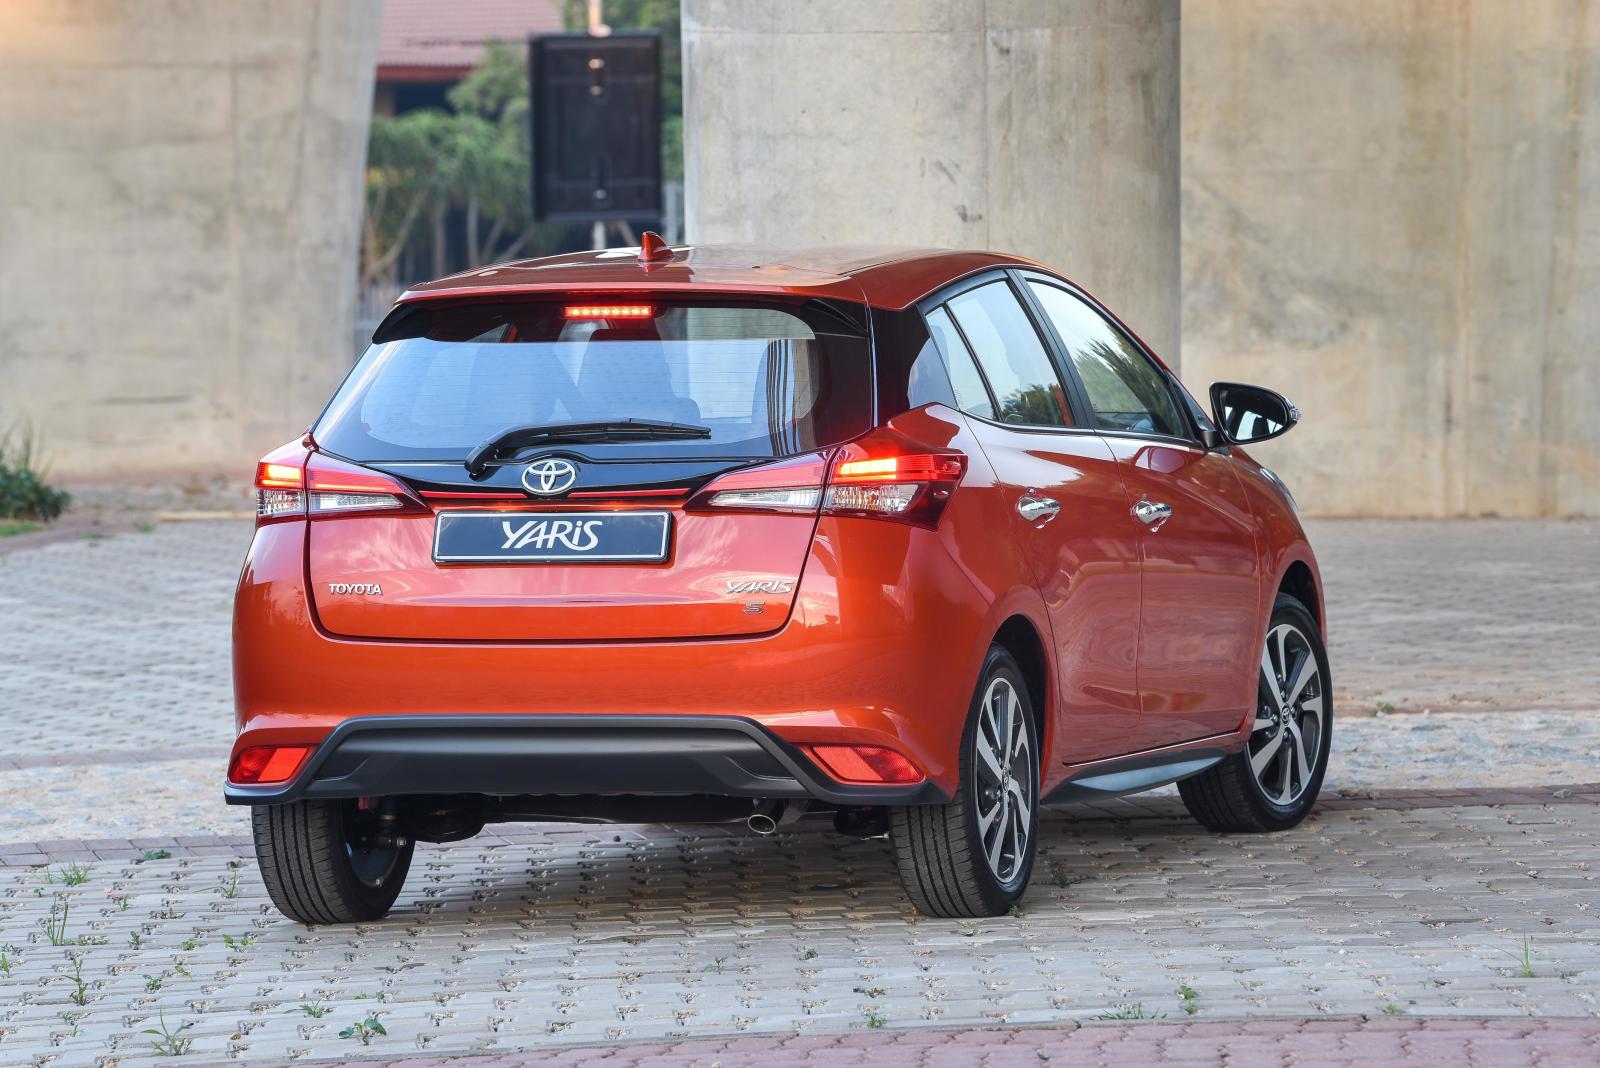 Berita, Yaris baru 2018 Afrika Selatan: Toyota Yaris 2018 TRD Sportivo Tertangkap Kamera, Sporty Sob!